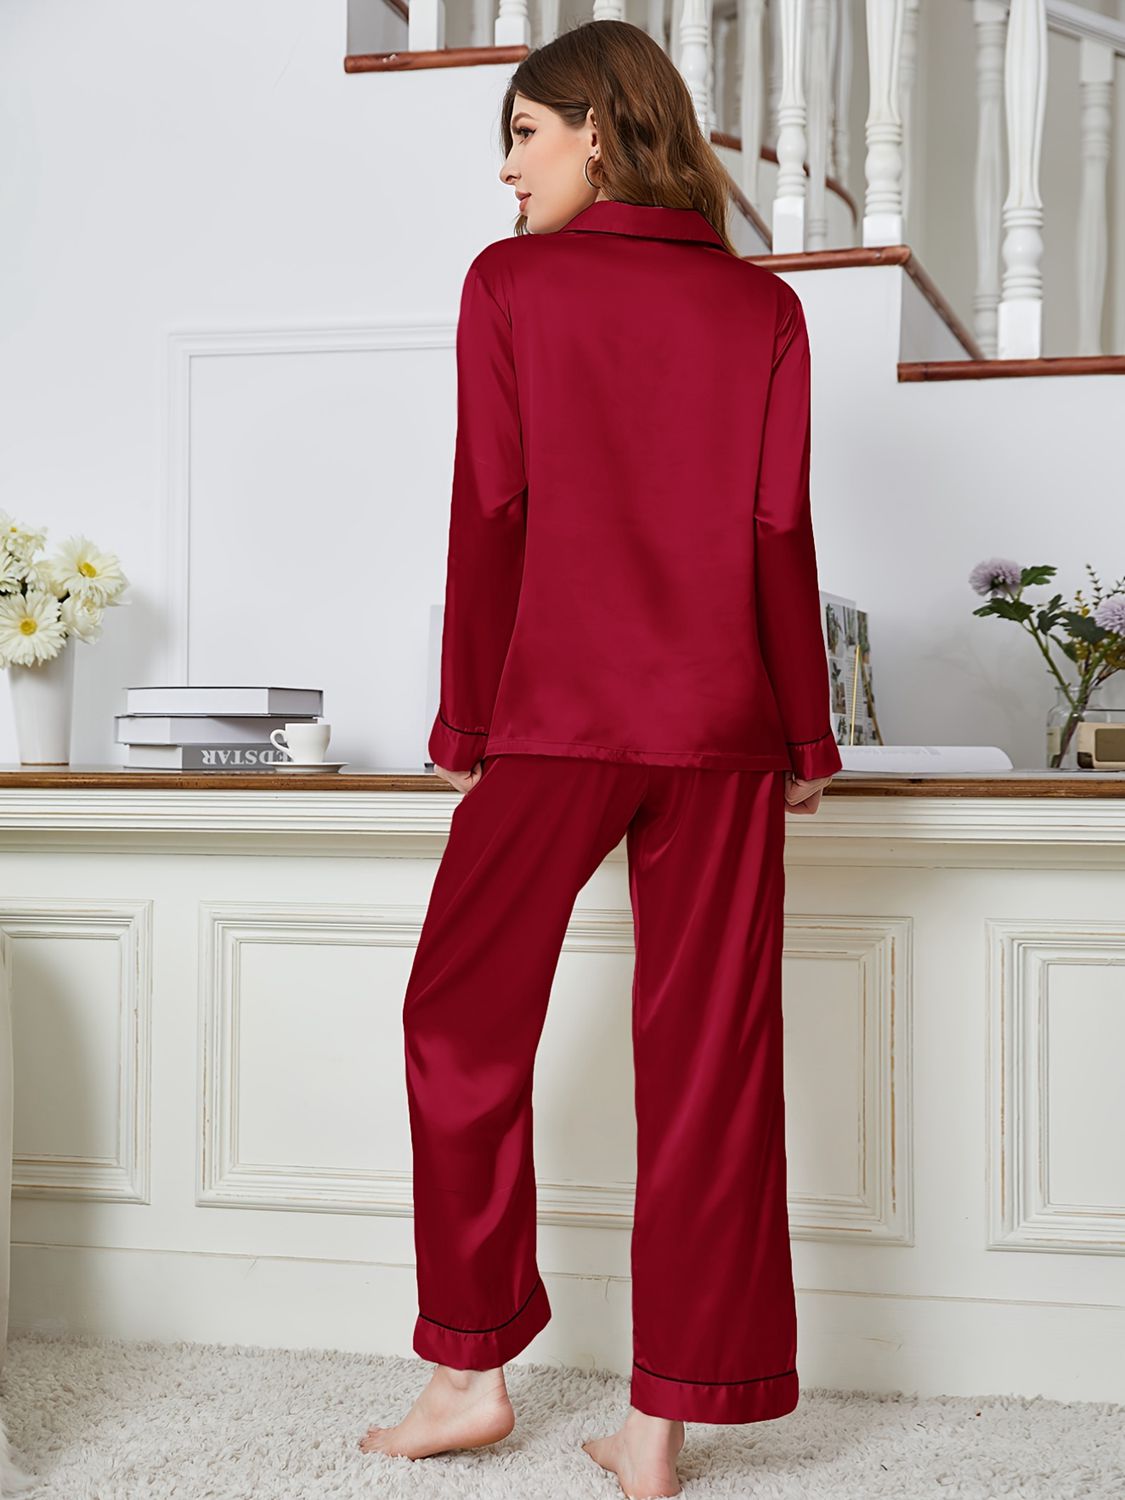 Classic Comfort: Lapel Collar Long Sleeve Top and Pants Pajama Set